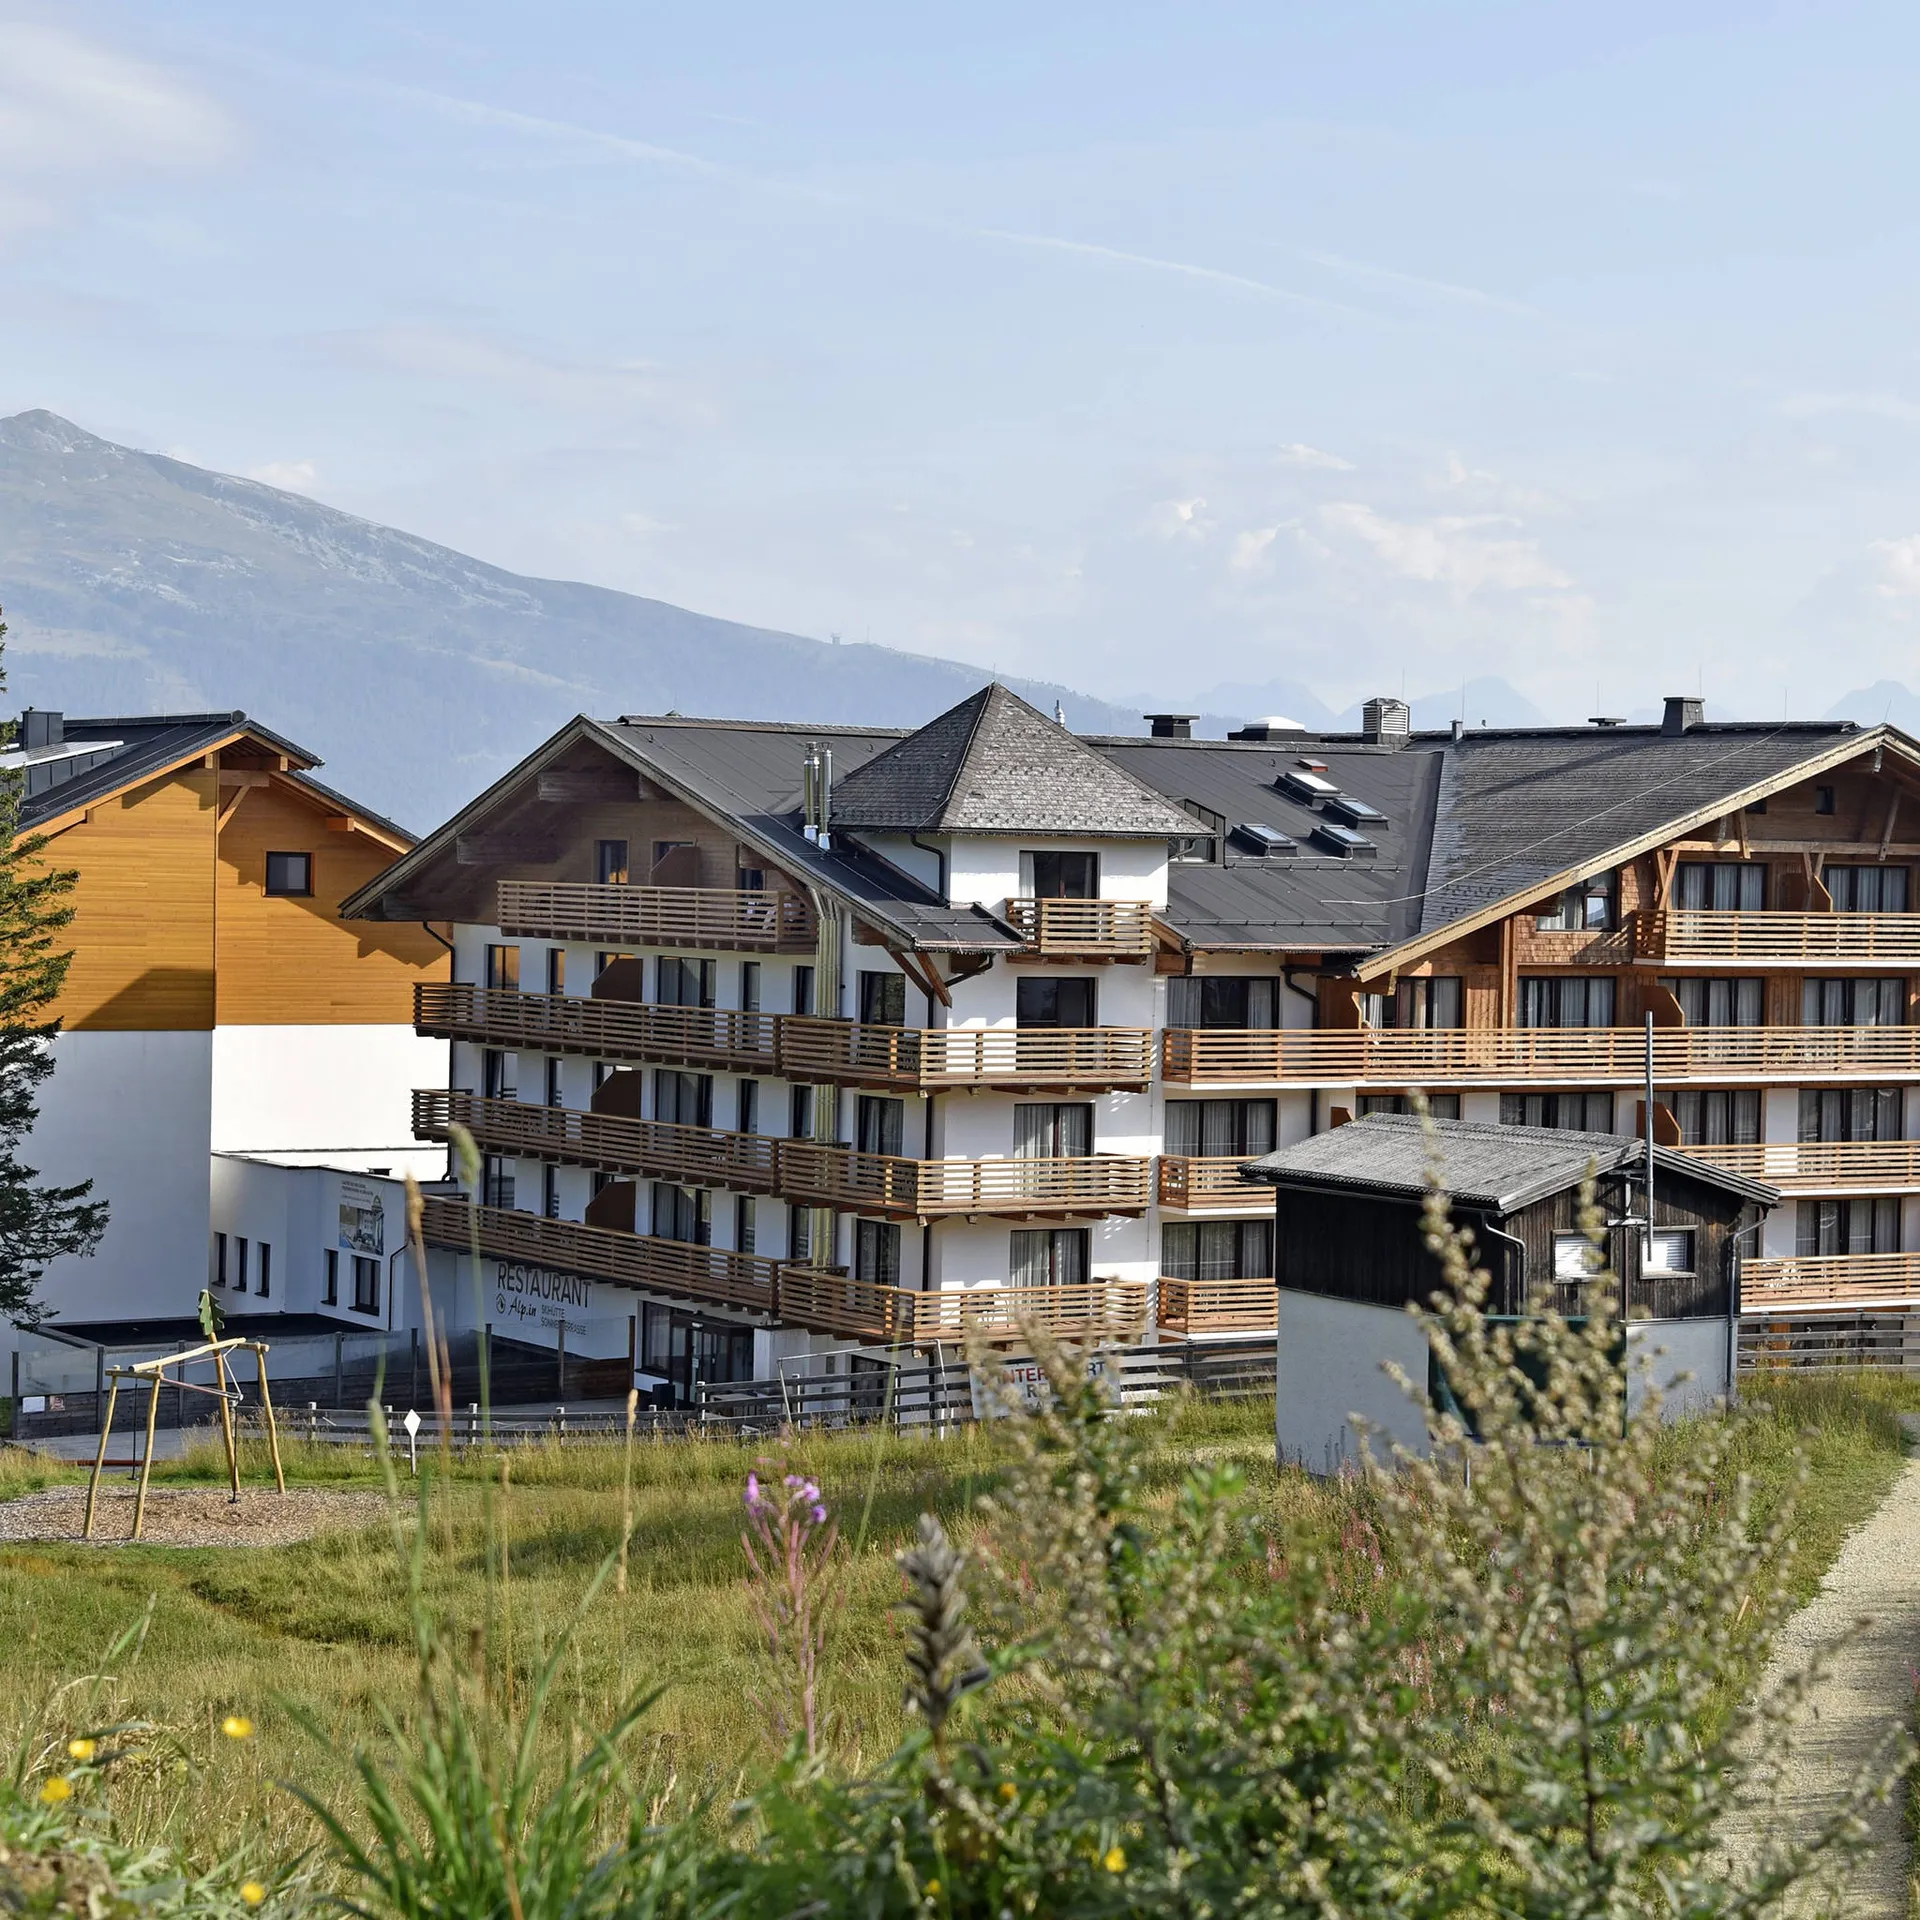 Das Alpenhaus Katschberg